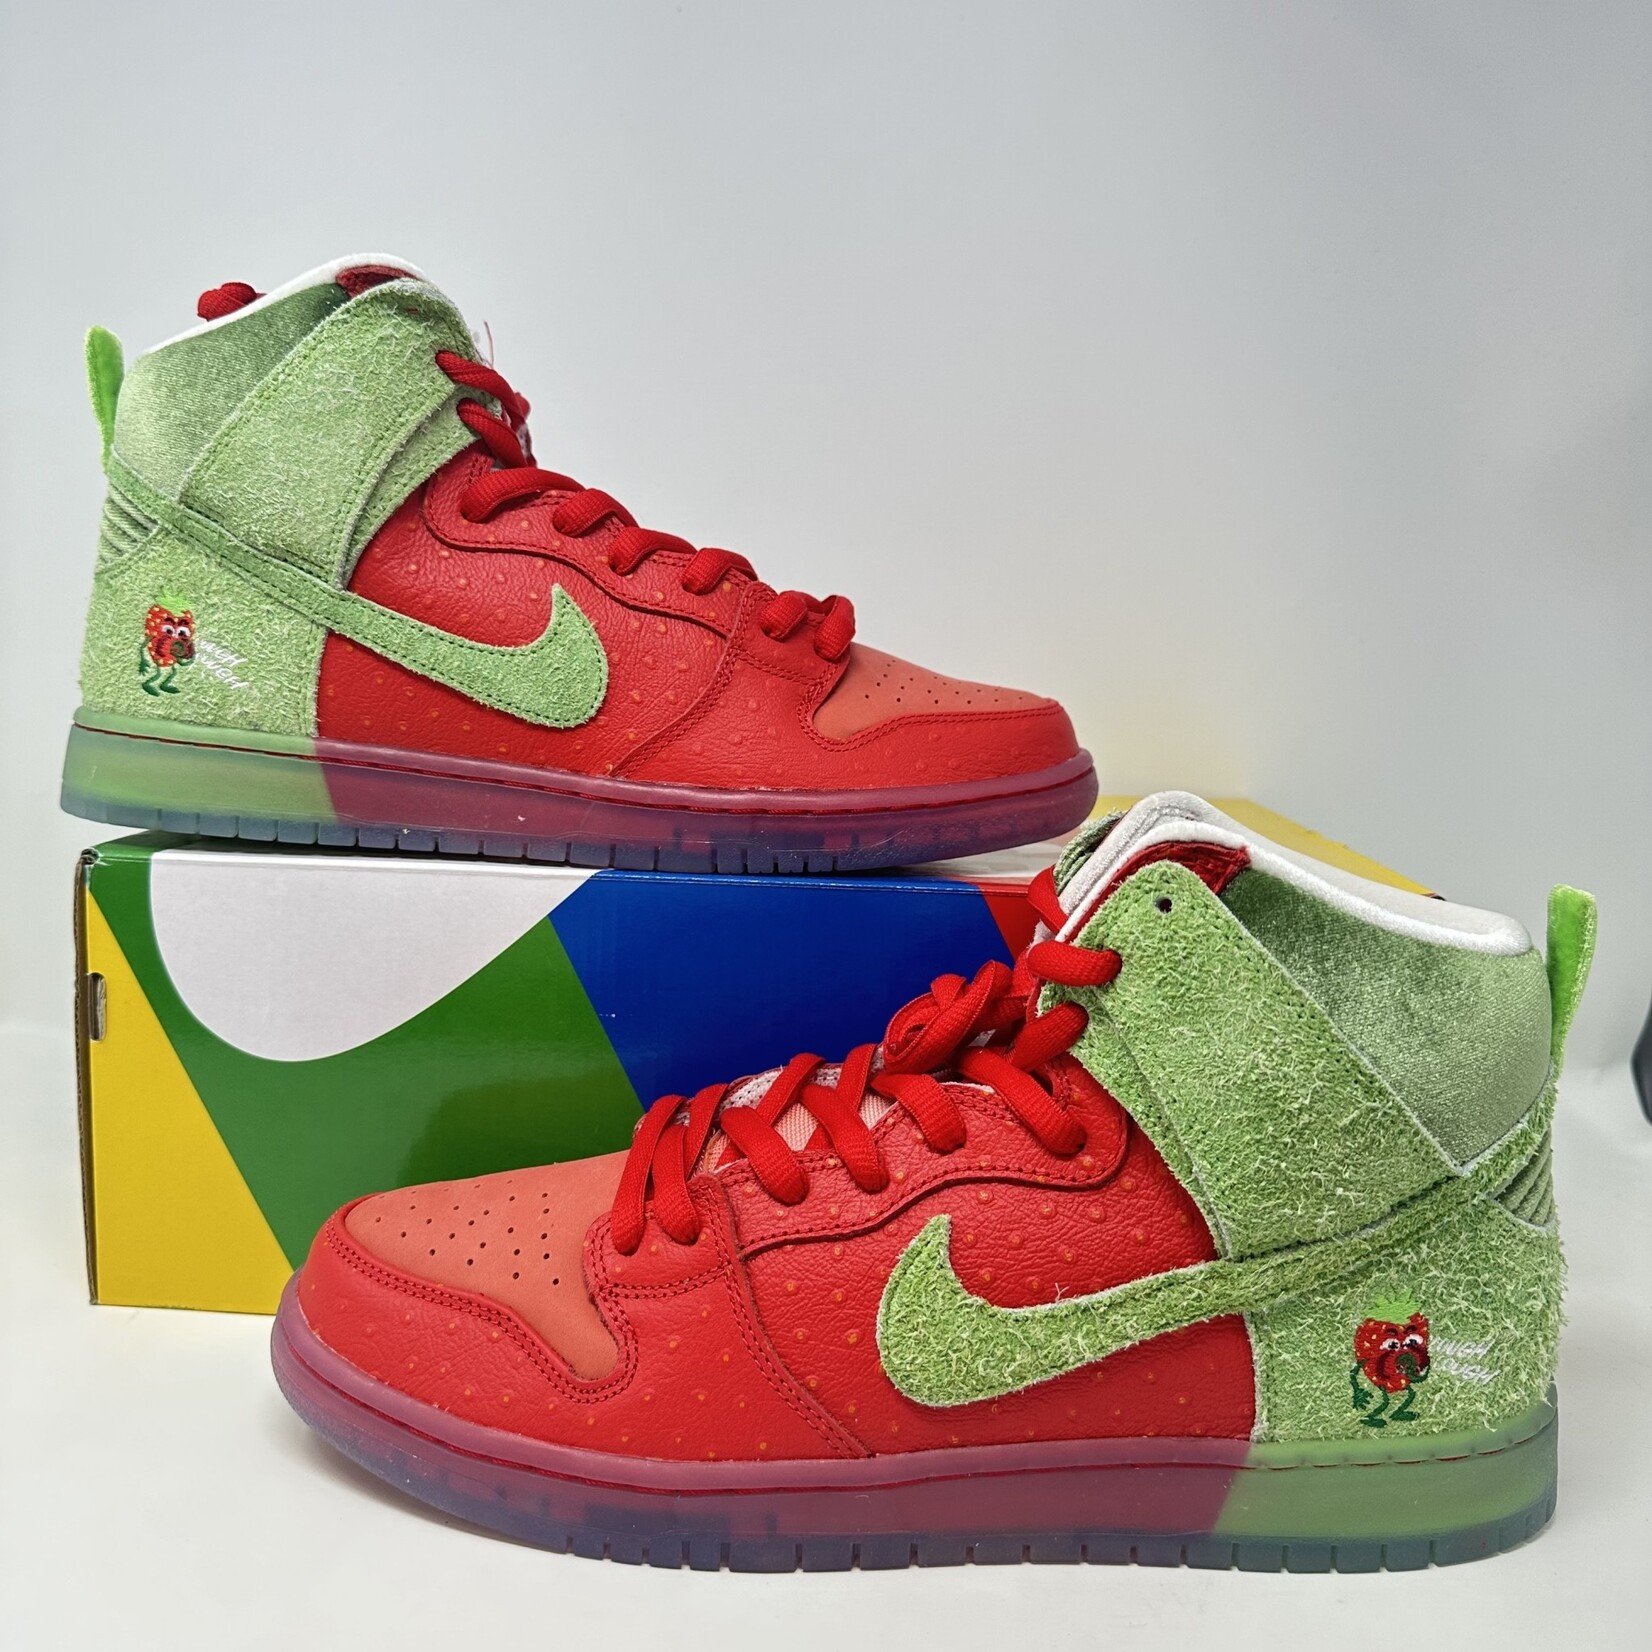 Nike Nike SB Dunk High Strawberry Cough